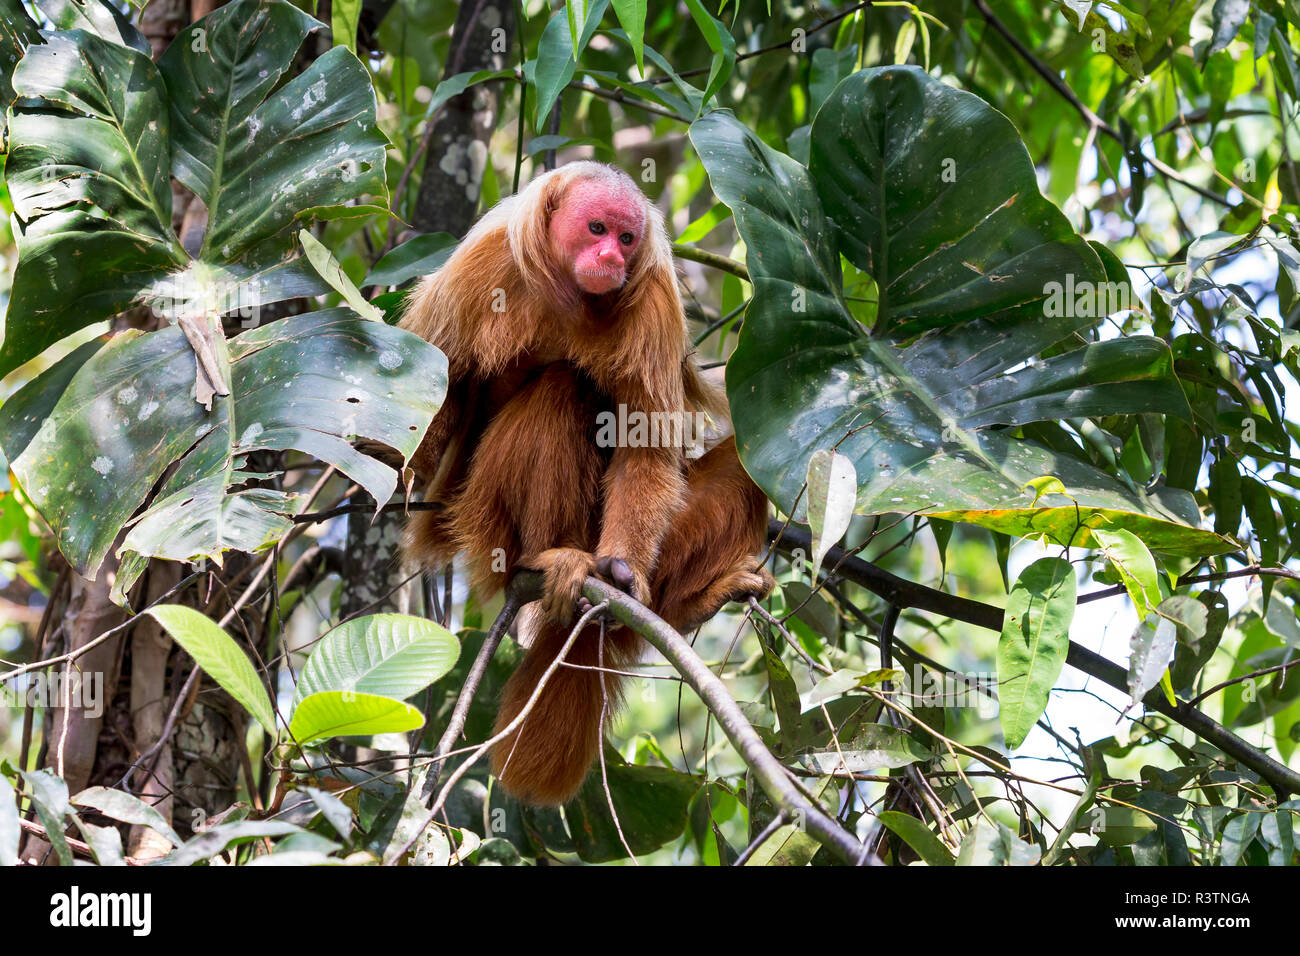 Brasilien, Amazonas, Manaus, Amazon EcoPark Jungle Lodge, Glatze uakari Affe,  Cacajao calvus. Porträt einer kahlen uakari Affen in den Bäumen  Stockfotografie - Alamy